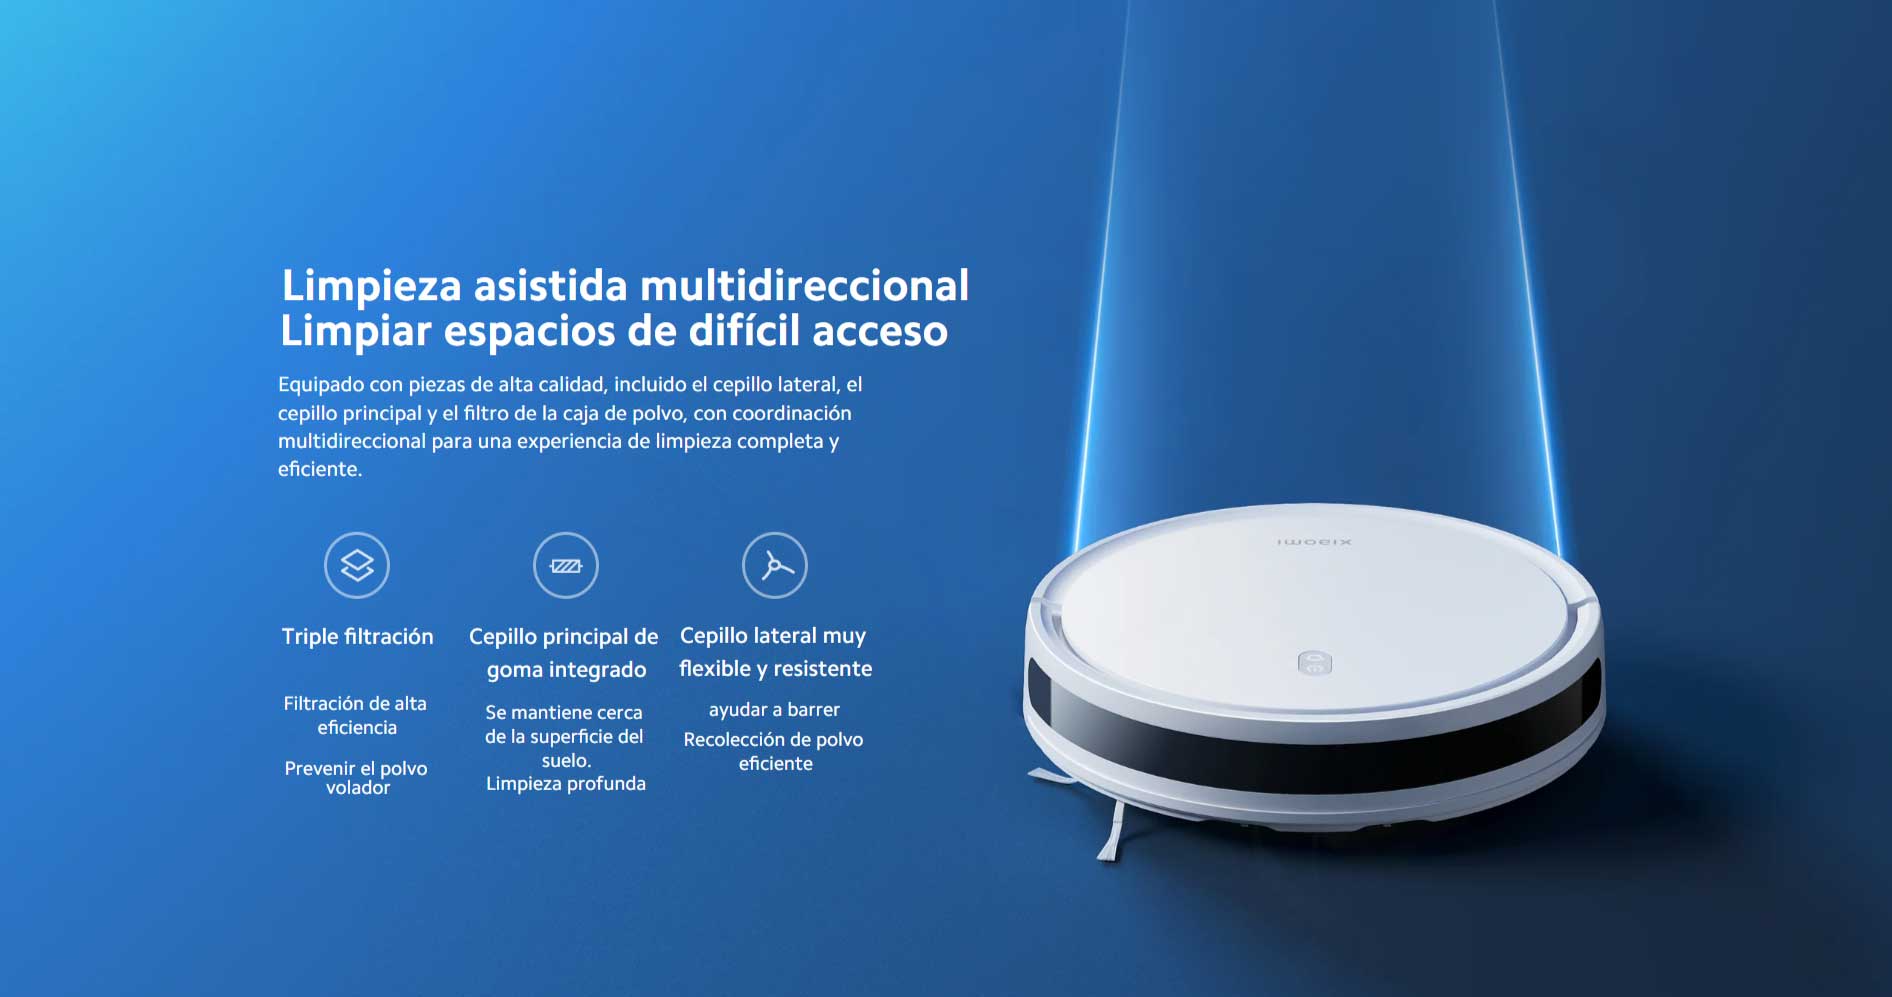 Aspiradora Robot Xiaomi E10 - Mi Uruguay